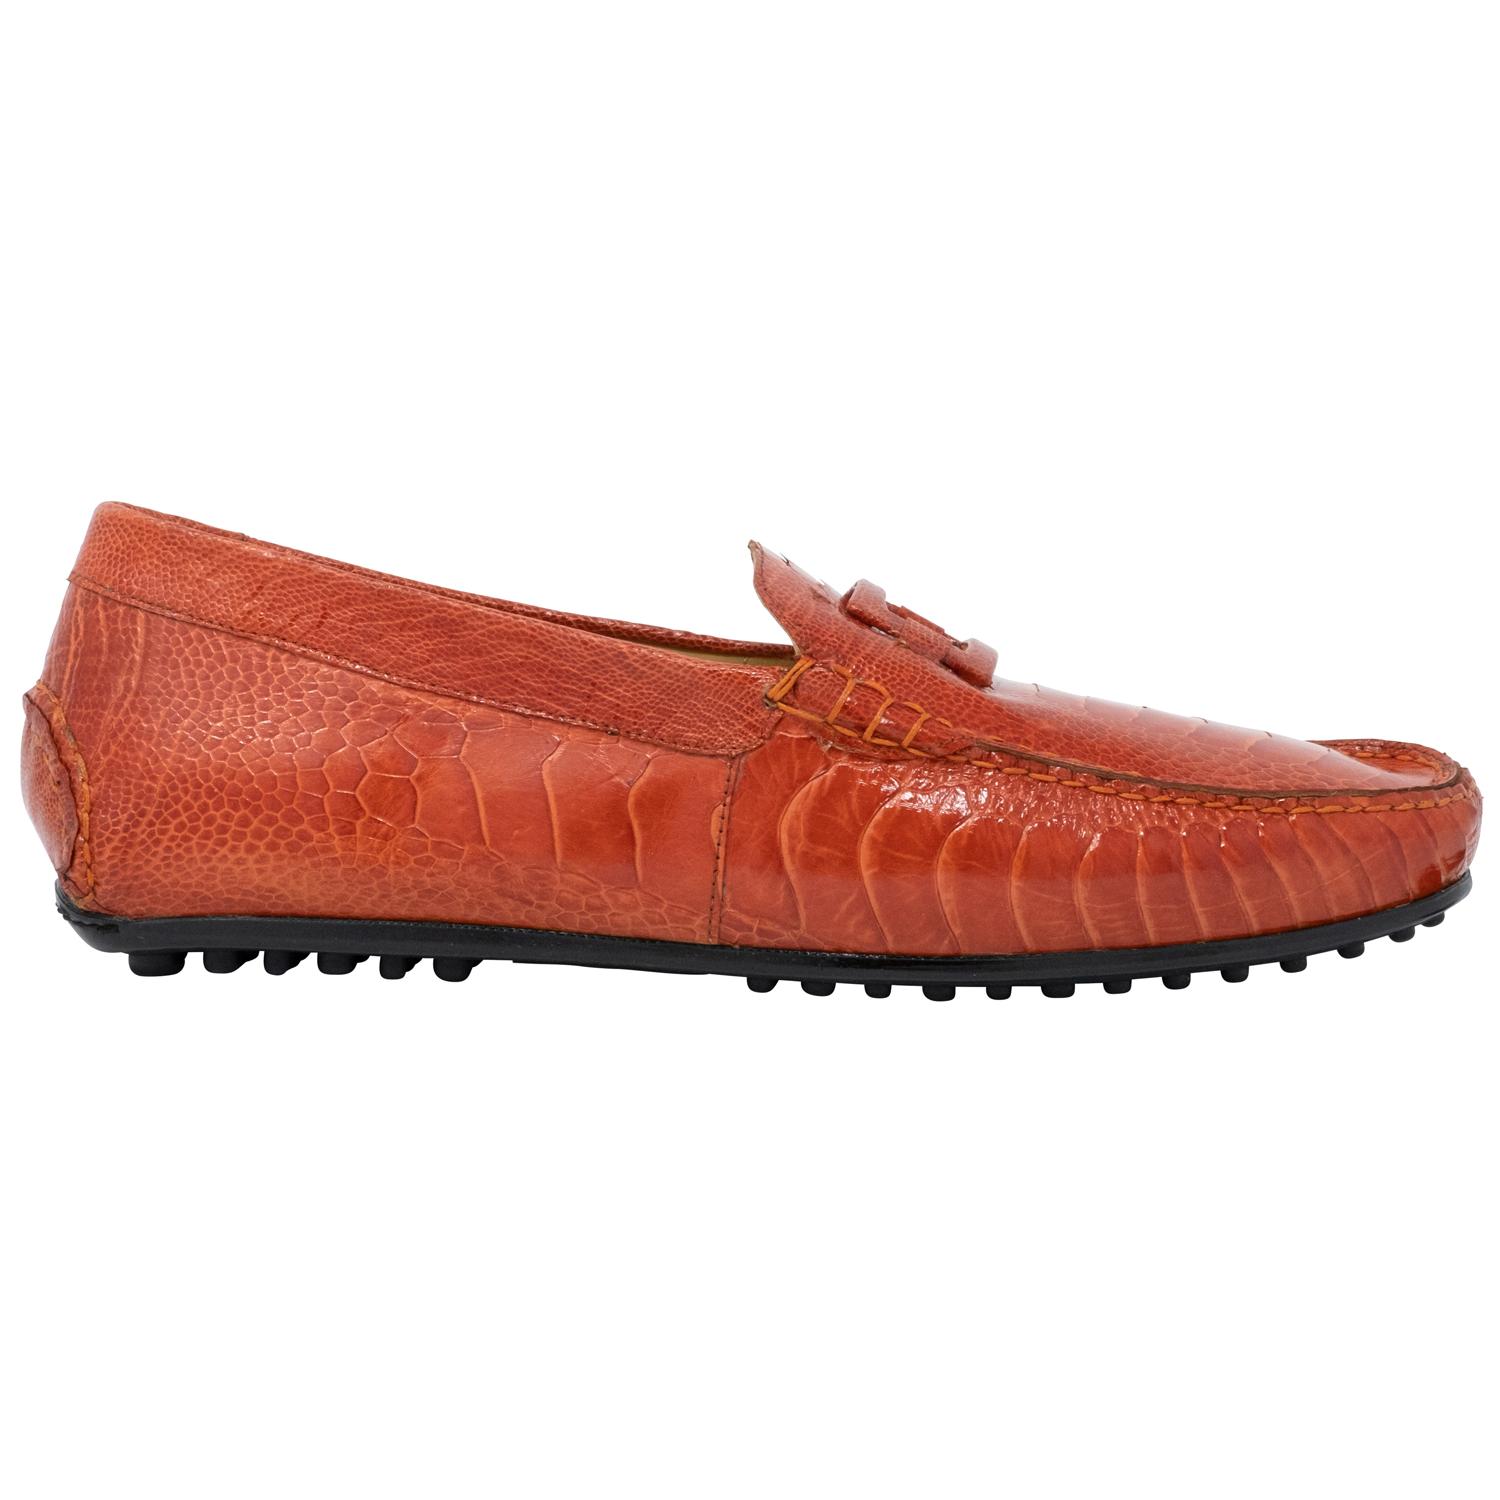 Mauri 3405 Blue Genuine Python Loafer Shoes. - $619.90 :: Upscale ...